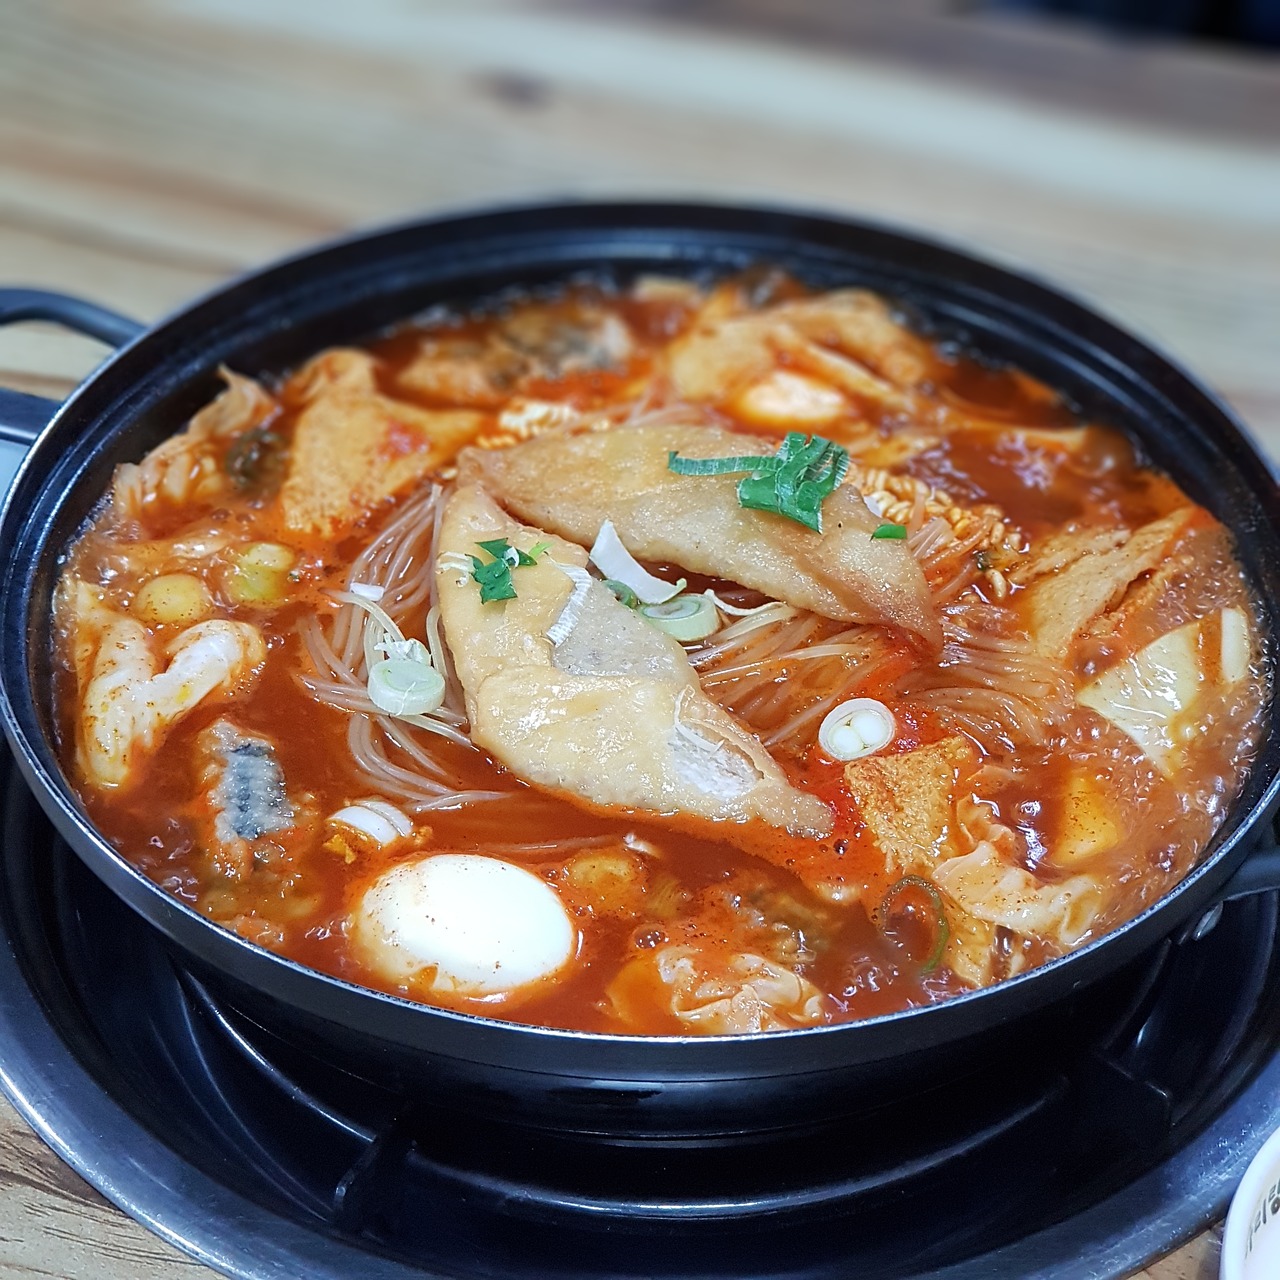 toppokki korean korean food free photo